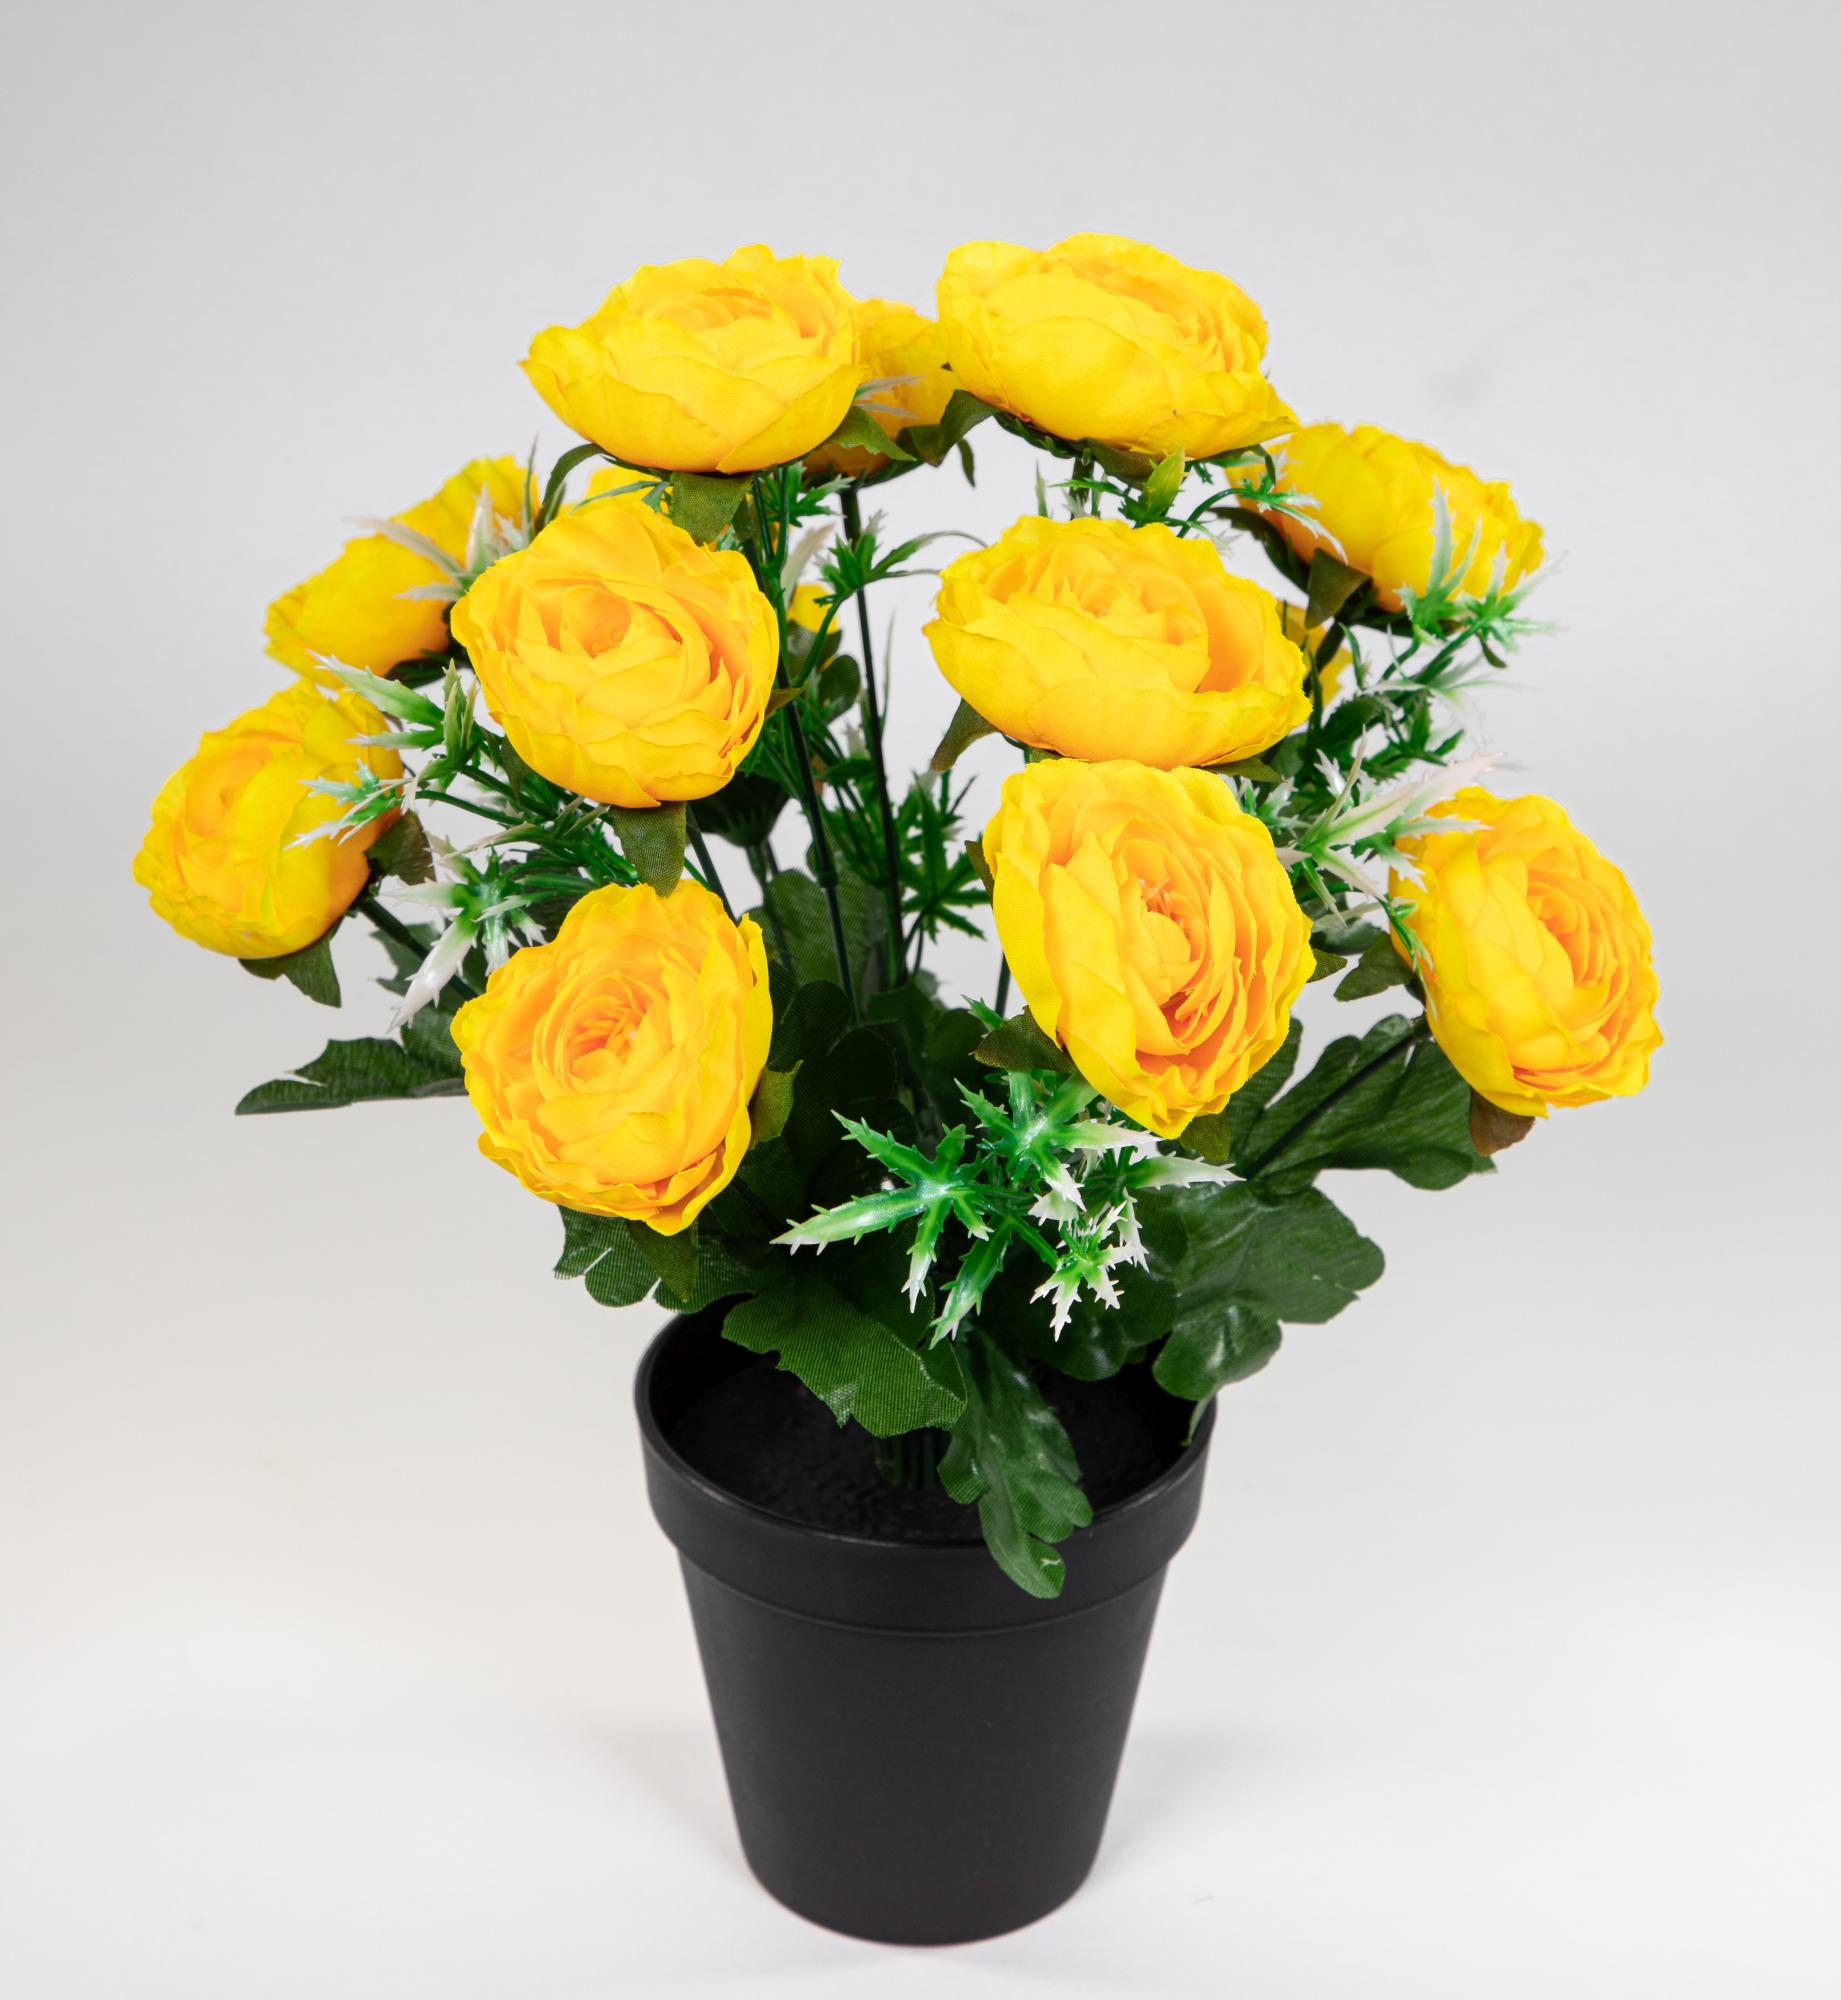 Ranunkelbusch 34cm gelb im Topf JA Kunstpflanzen Kunstblumen künstliche Ranunkel Blumen